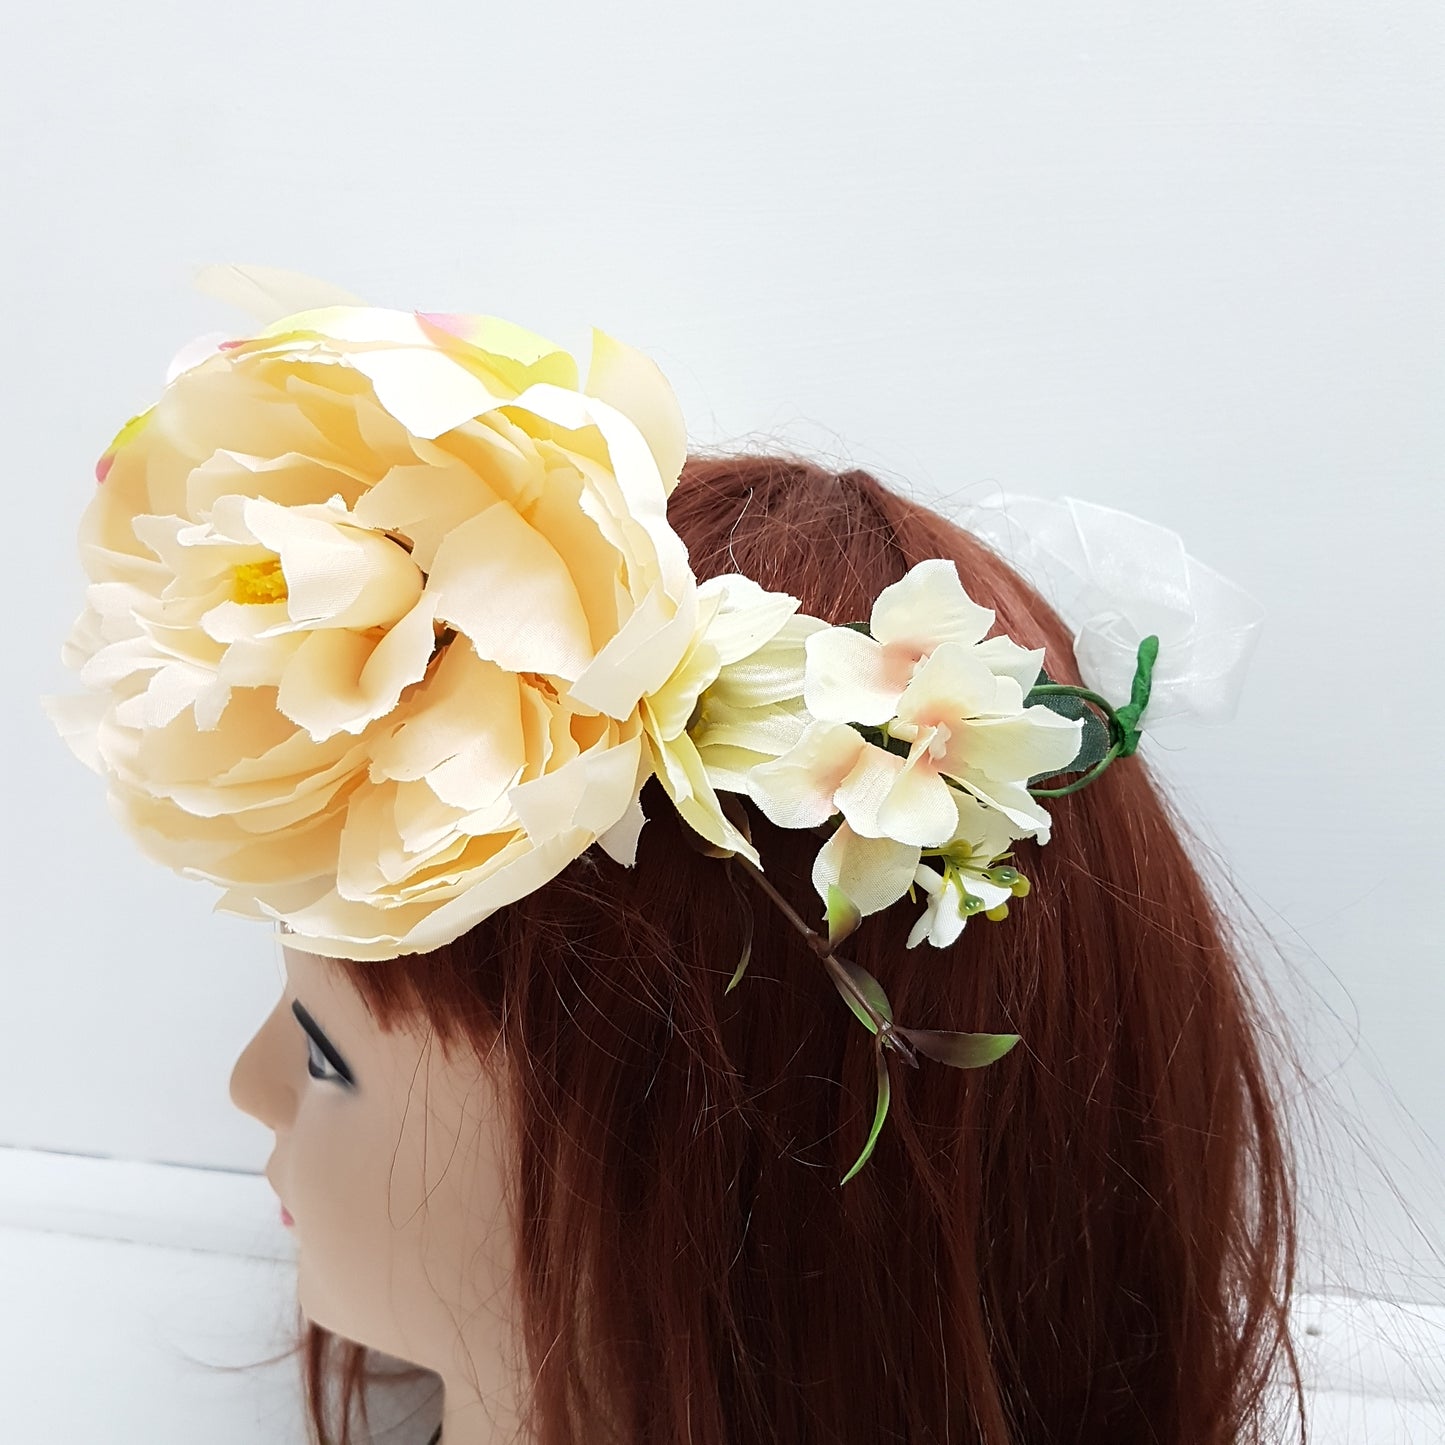 Huge Floral Statement Hair Crown